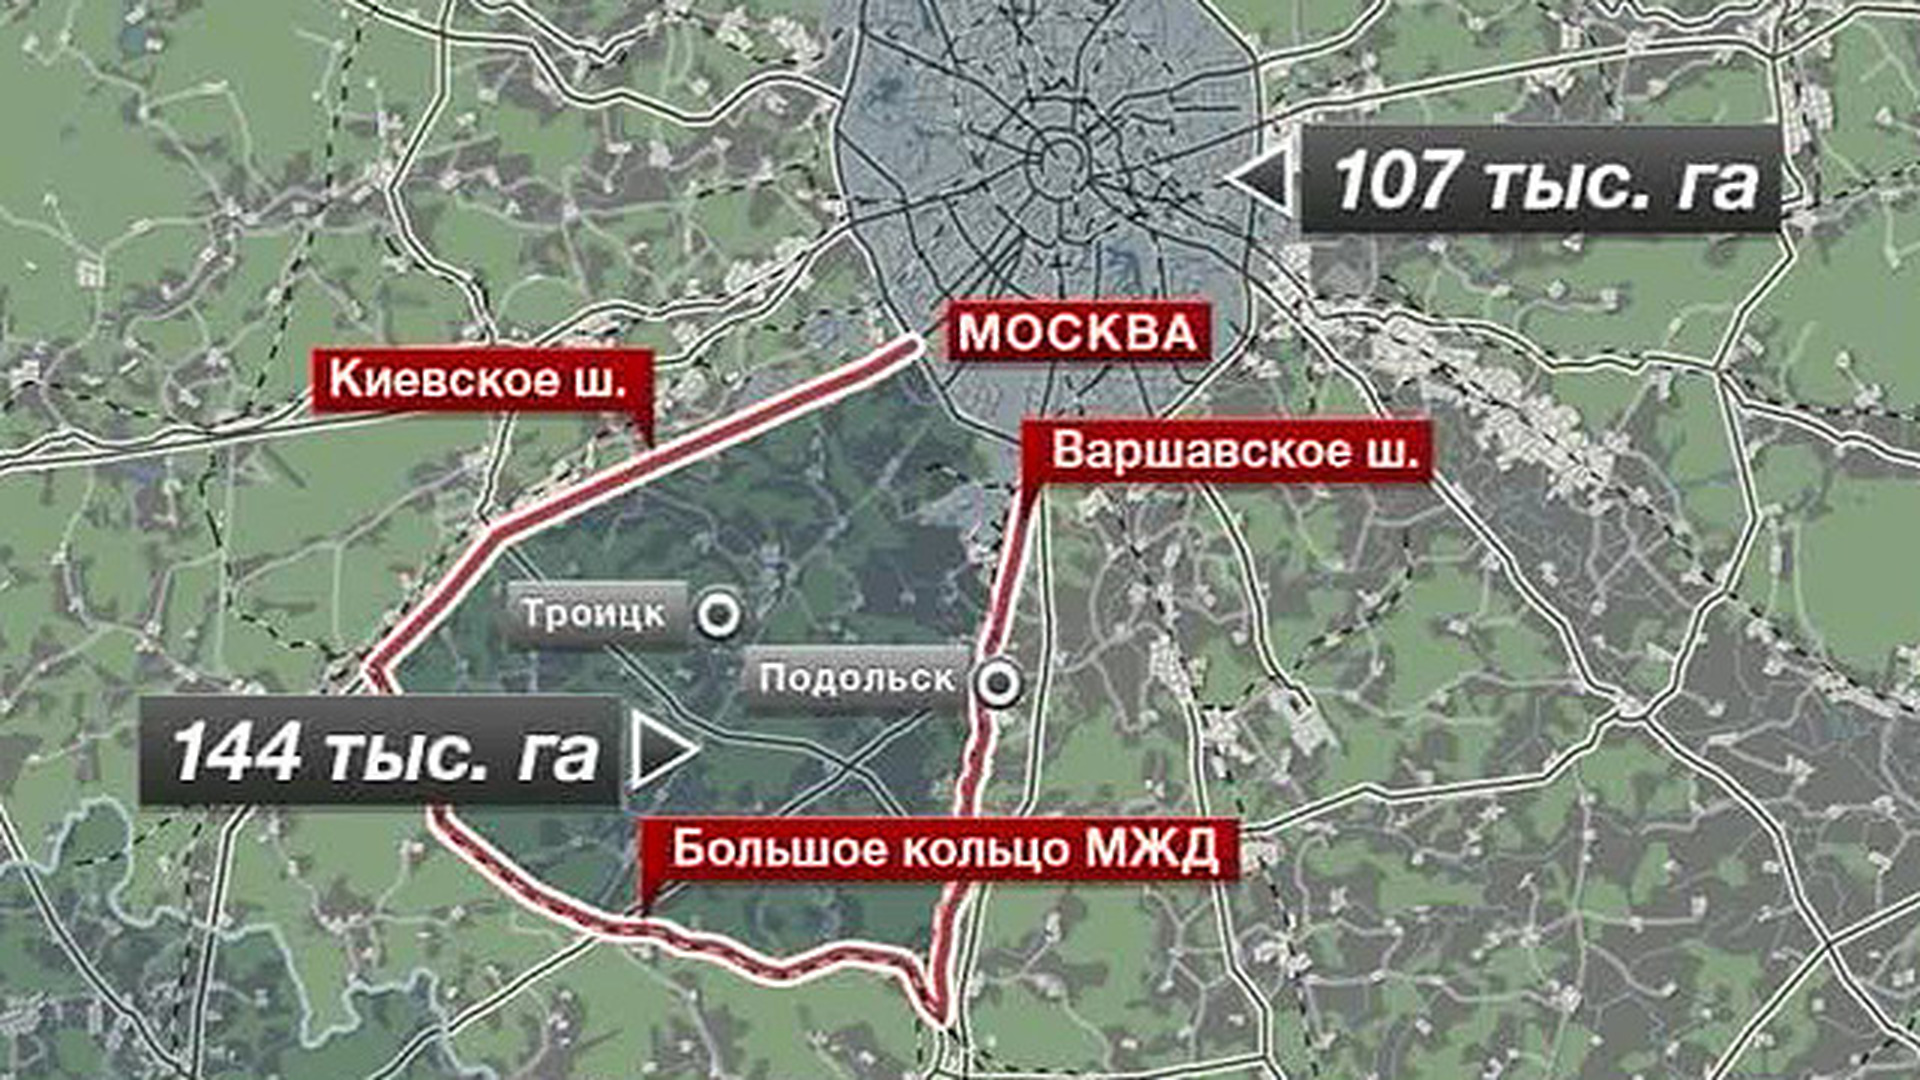 Новая москва год создания. Новая Москва на карте. Территория Москвы. Расширение Москвы. Территория новой Москвы на карте.